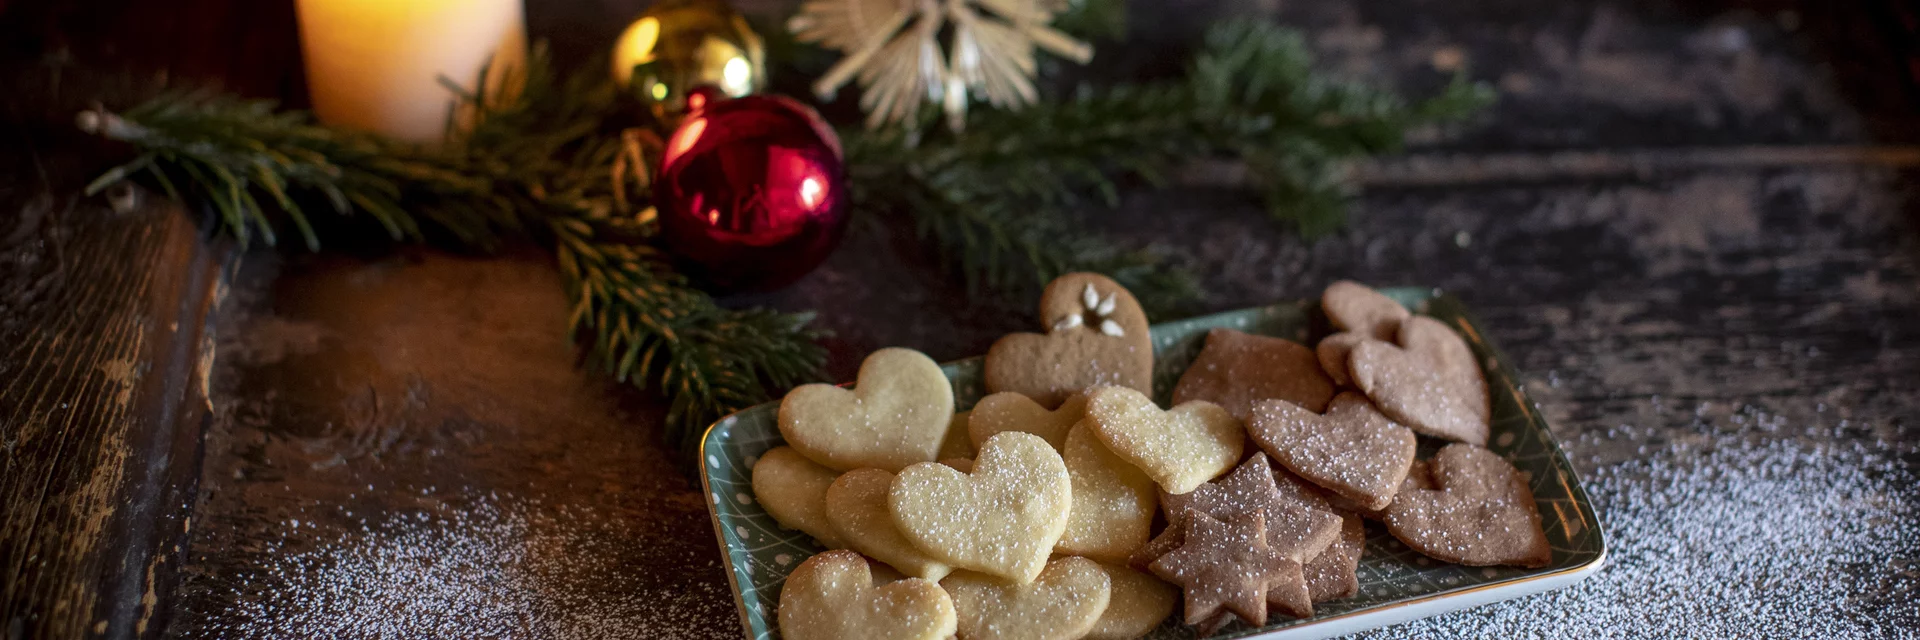 Kekse backen im Advent | © STG | Tom Lamm